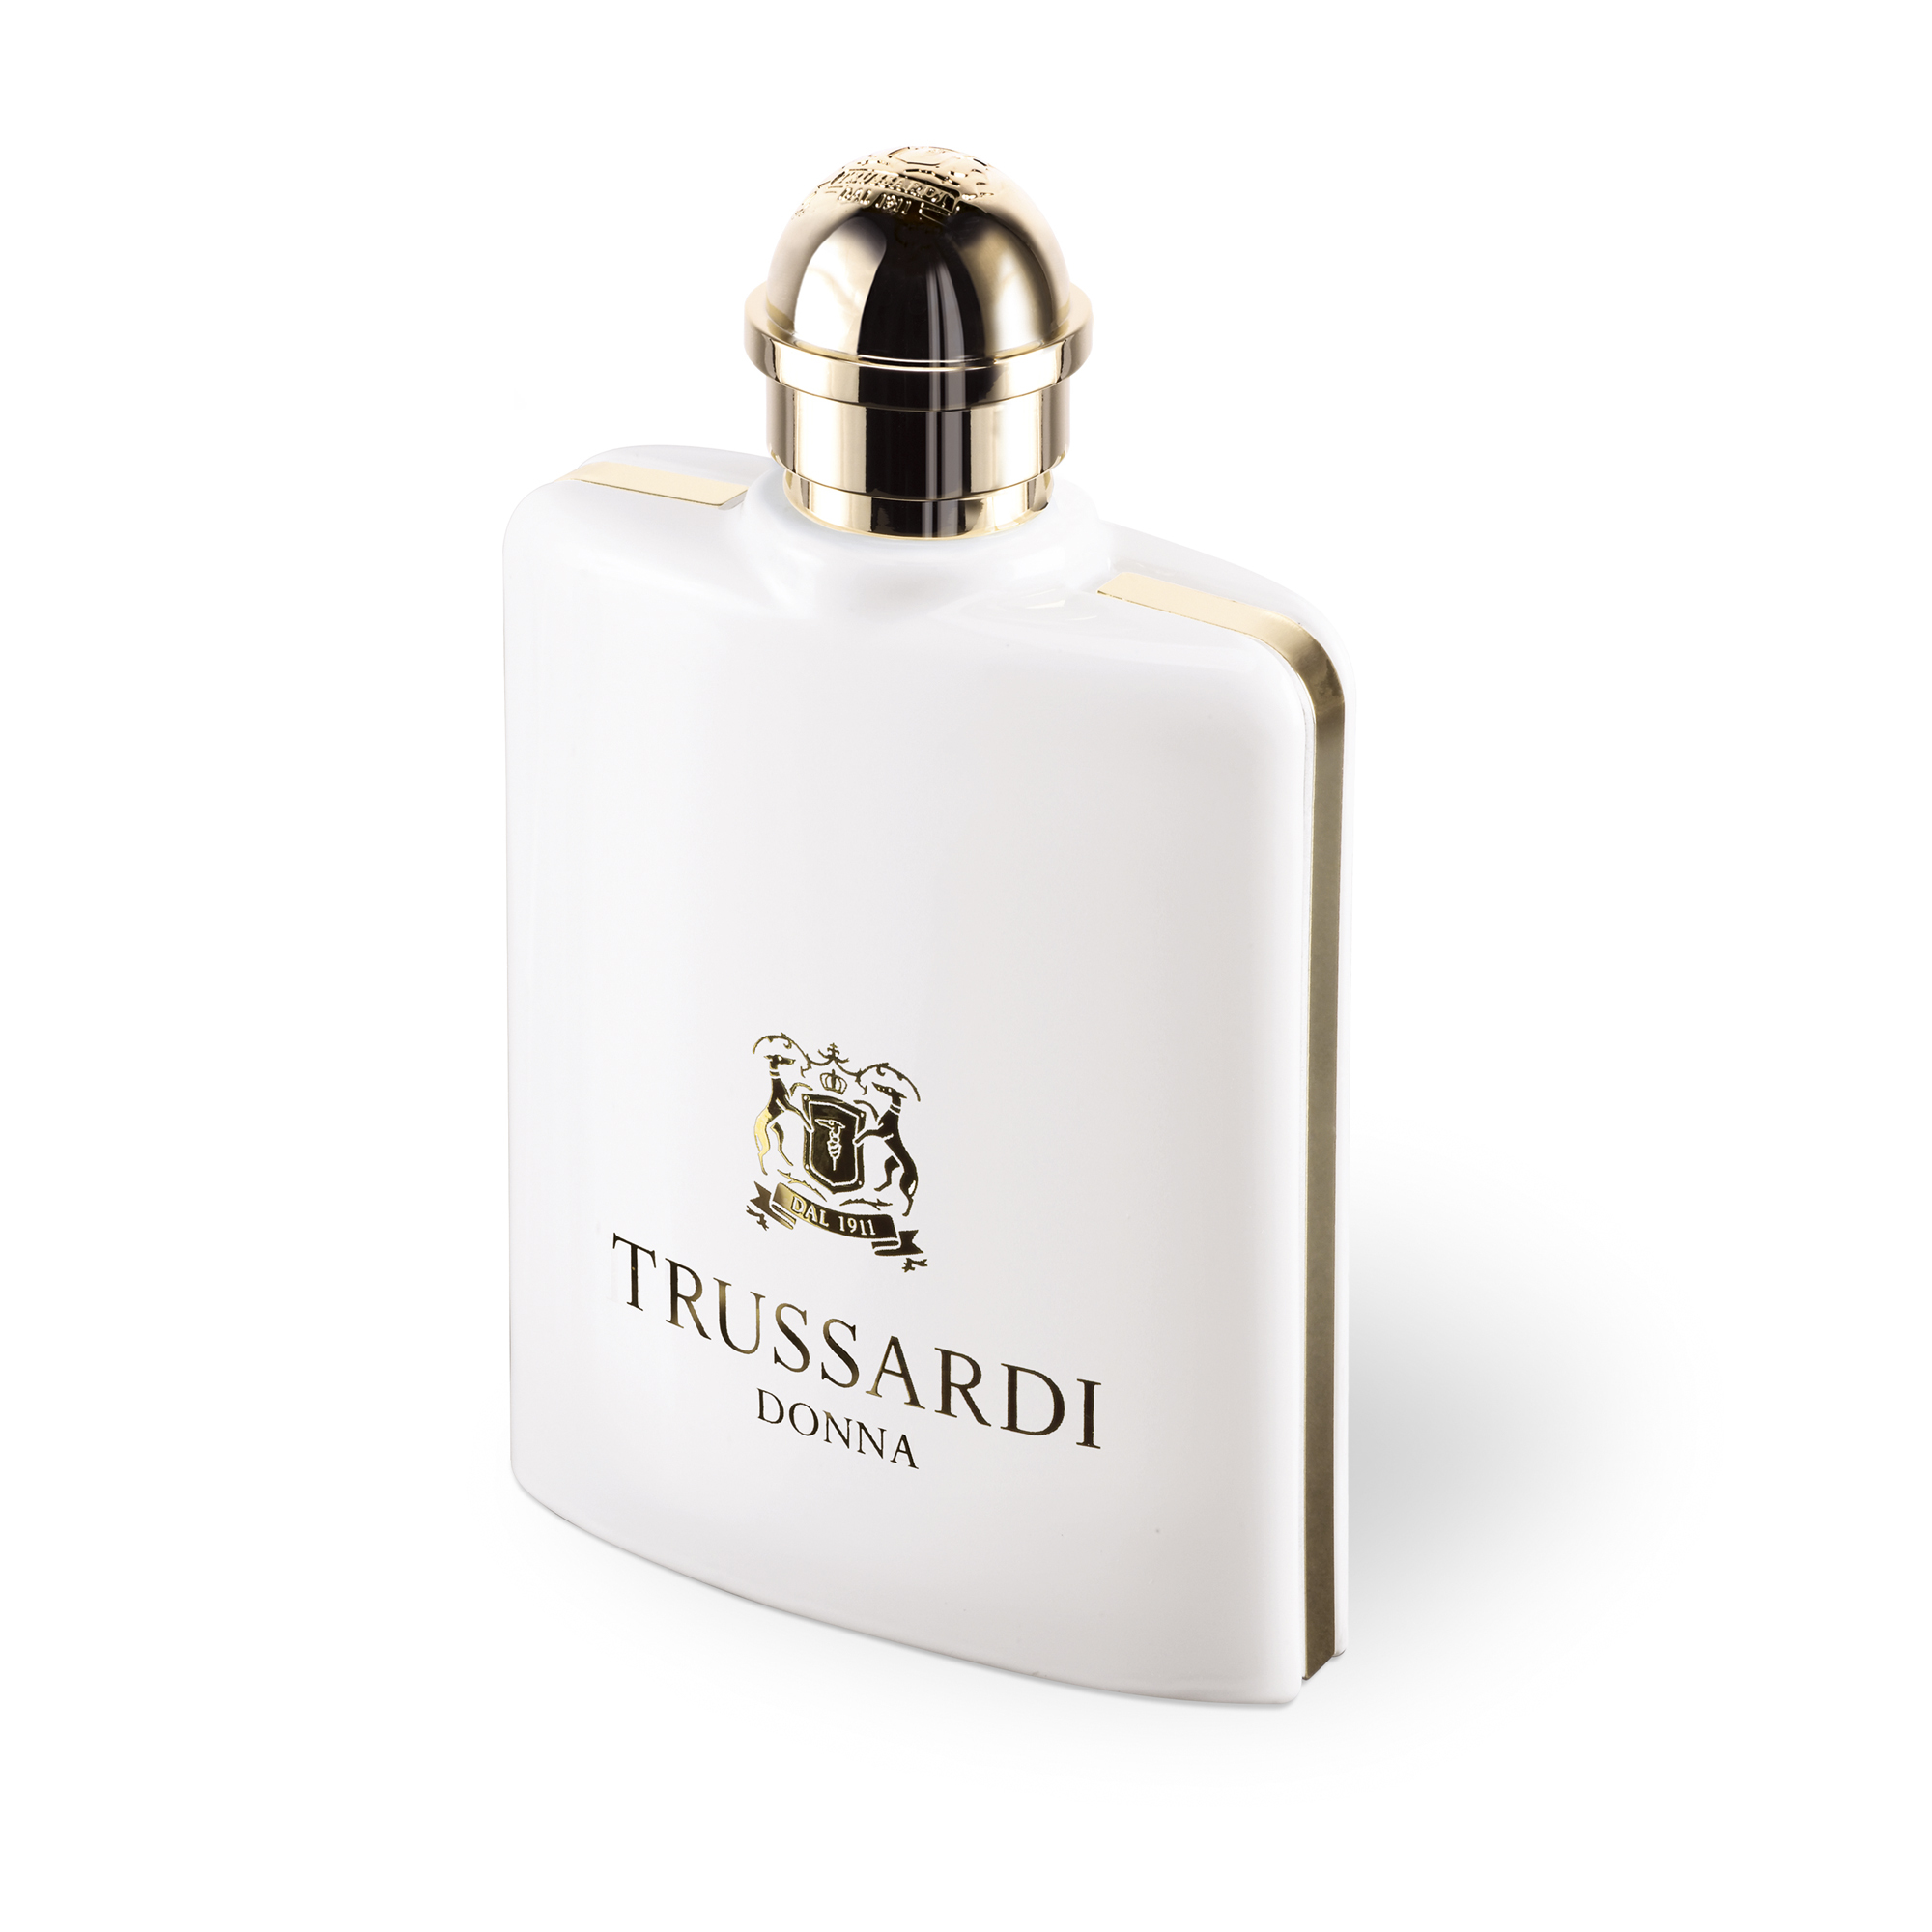 Trussardi Donna eau de parfum / 100 ml / dames